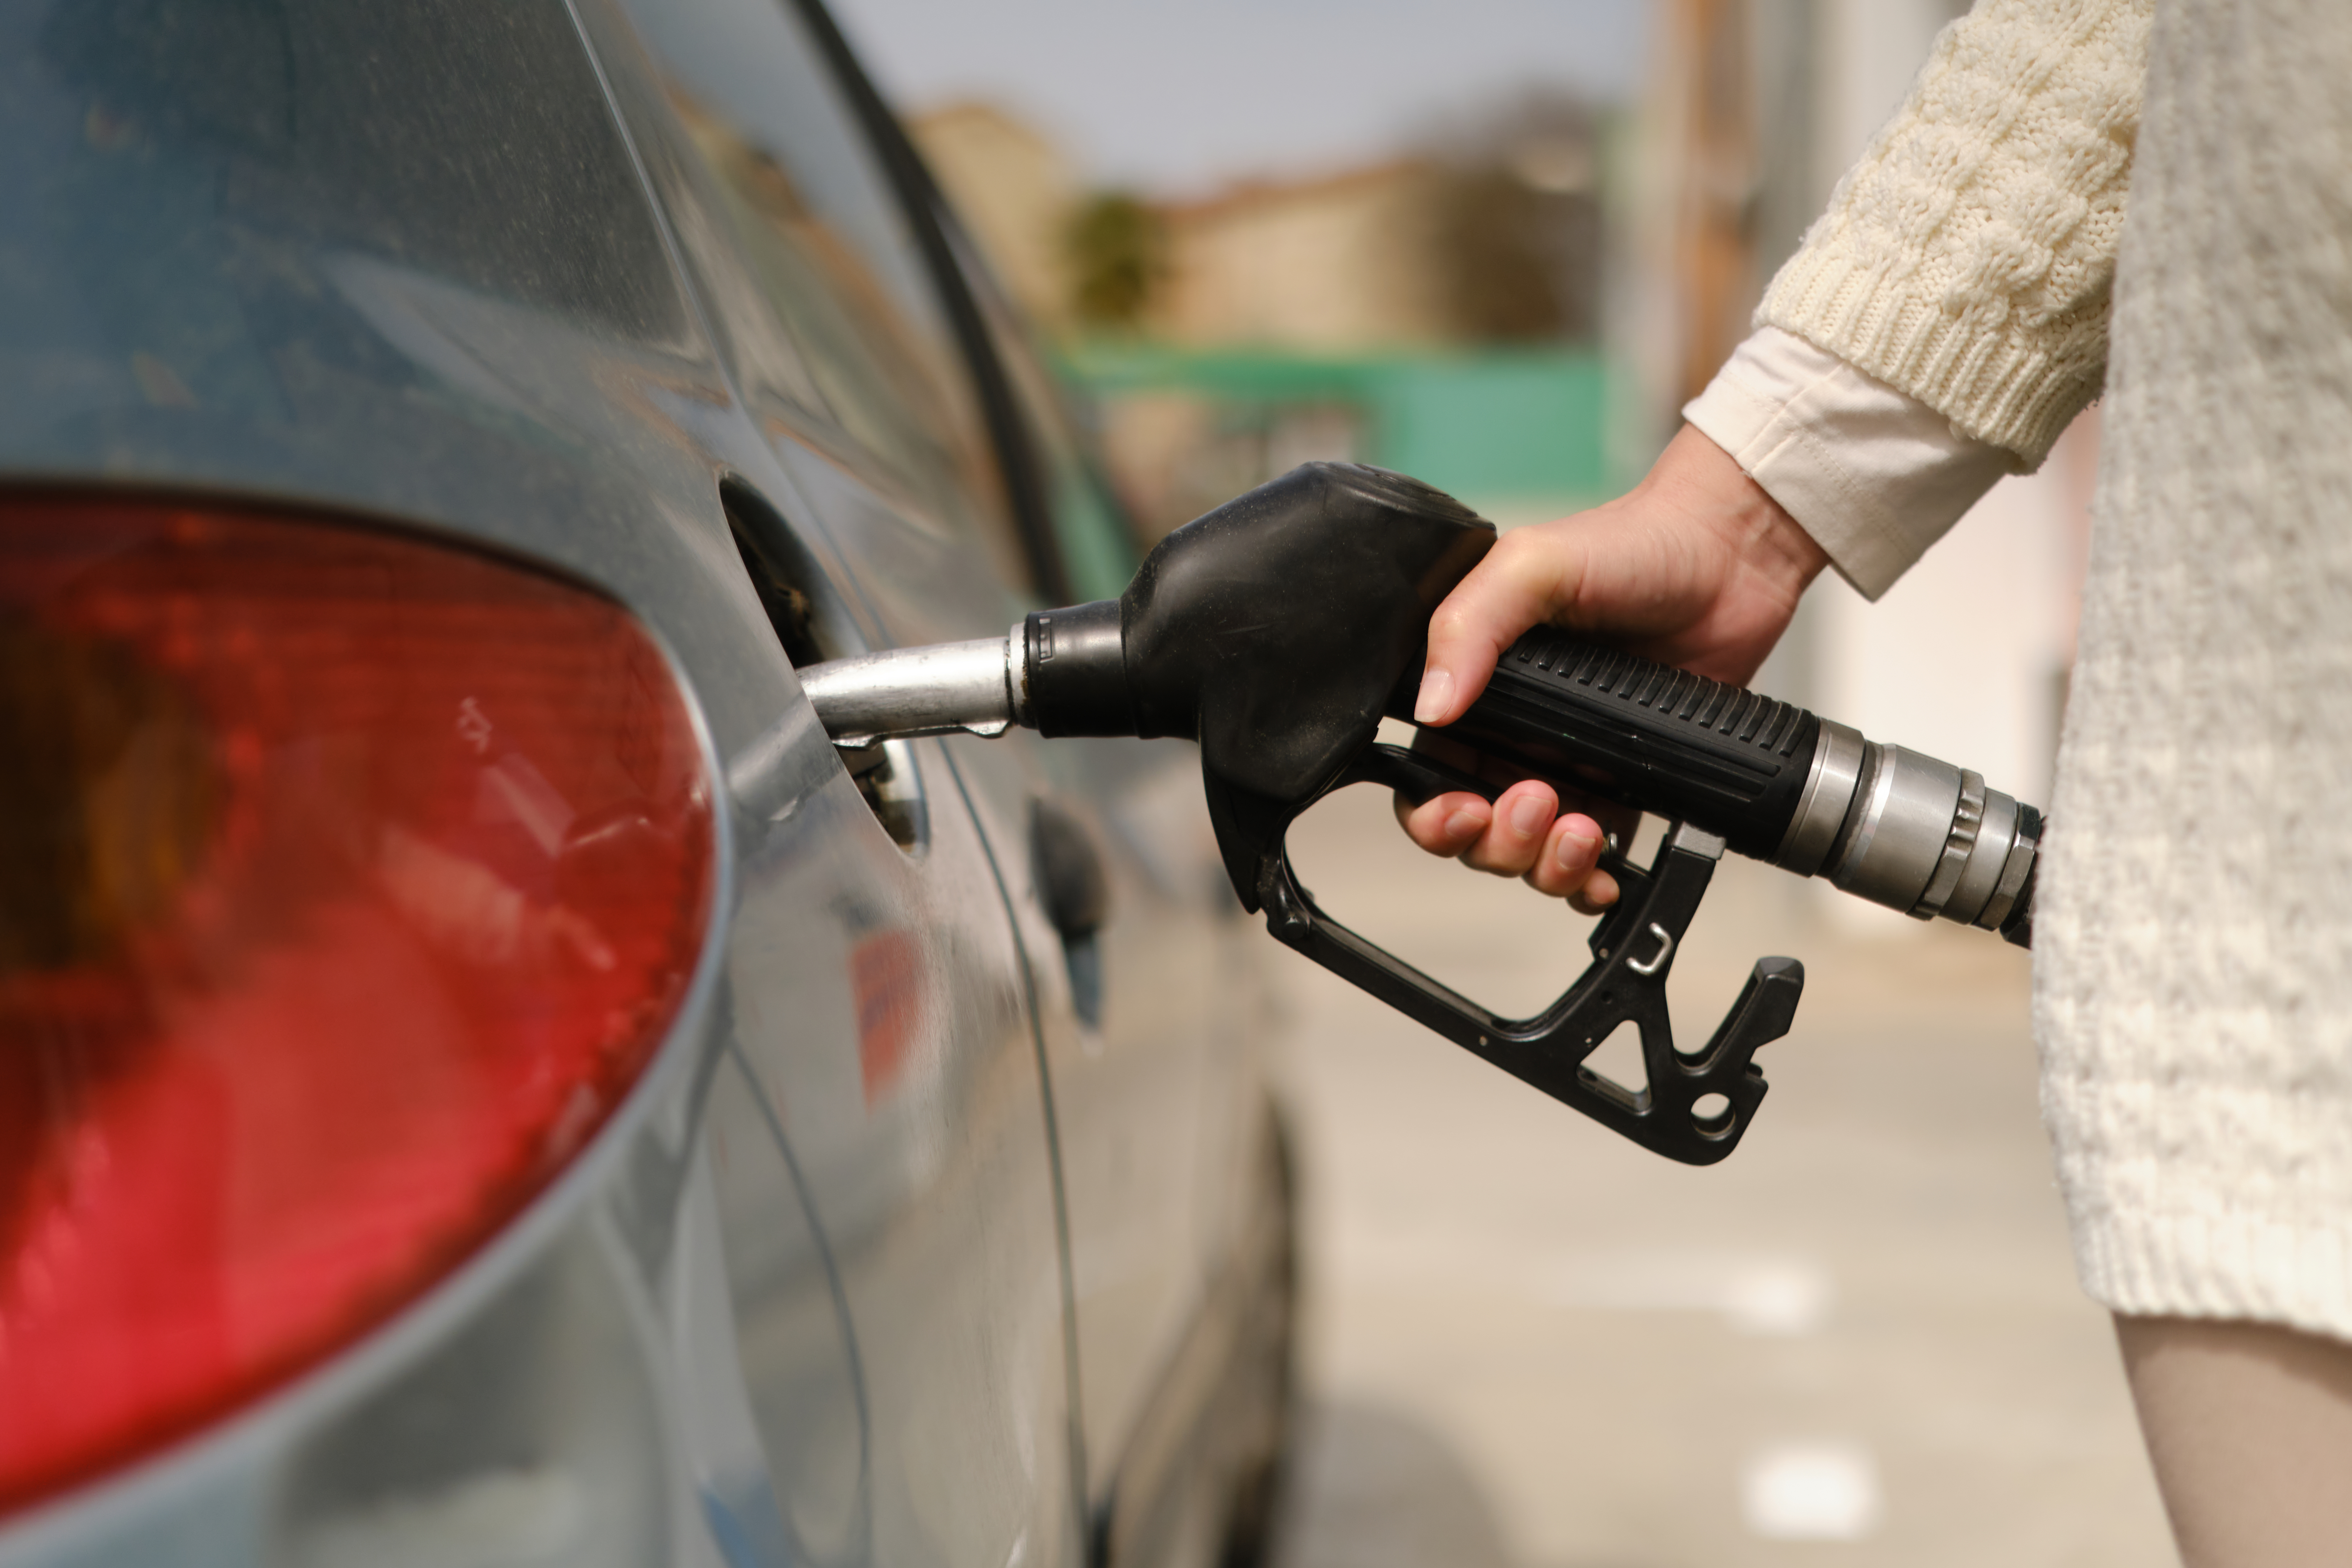 Durch den Einsatz kraftstoffsparender Fahrtechniken sparen Sie nicht nur Geld, sondern schonen auch die Umwelt